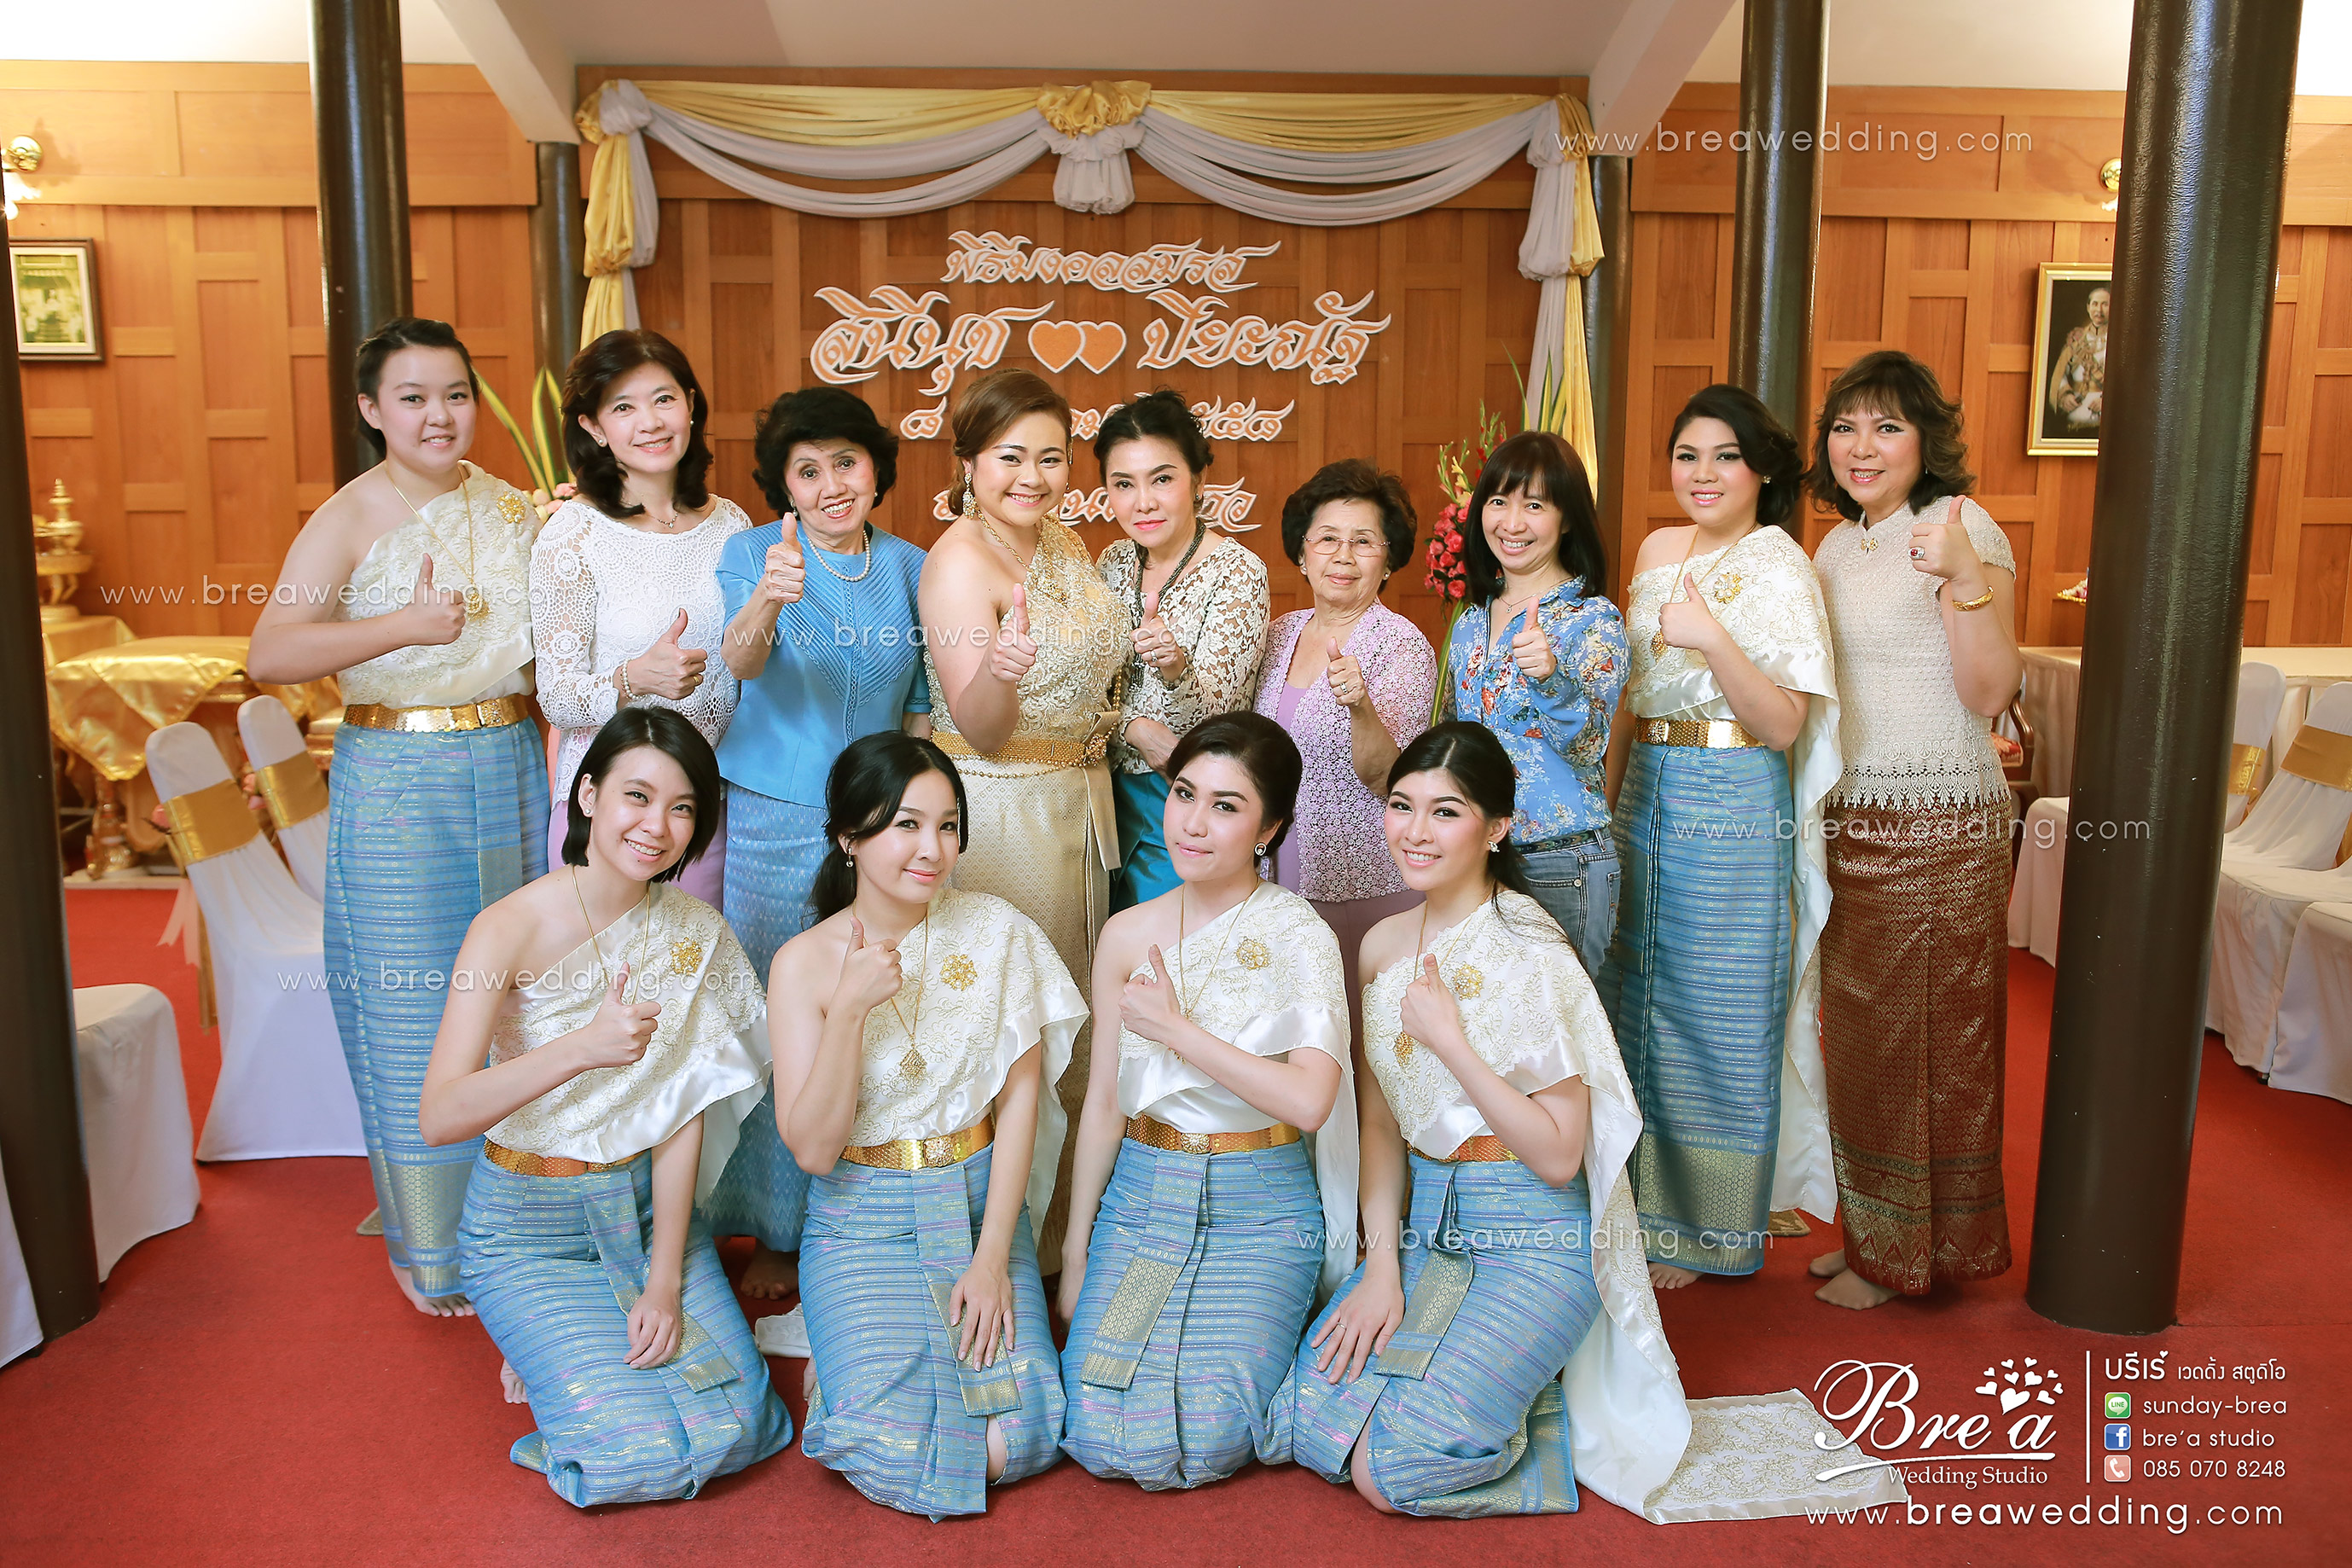 ถ่ายรูปพิธีแต่งงาน กรุงเทพ นนทบุรี 